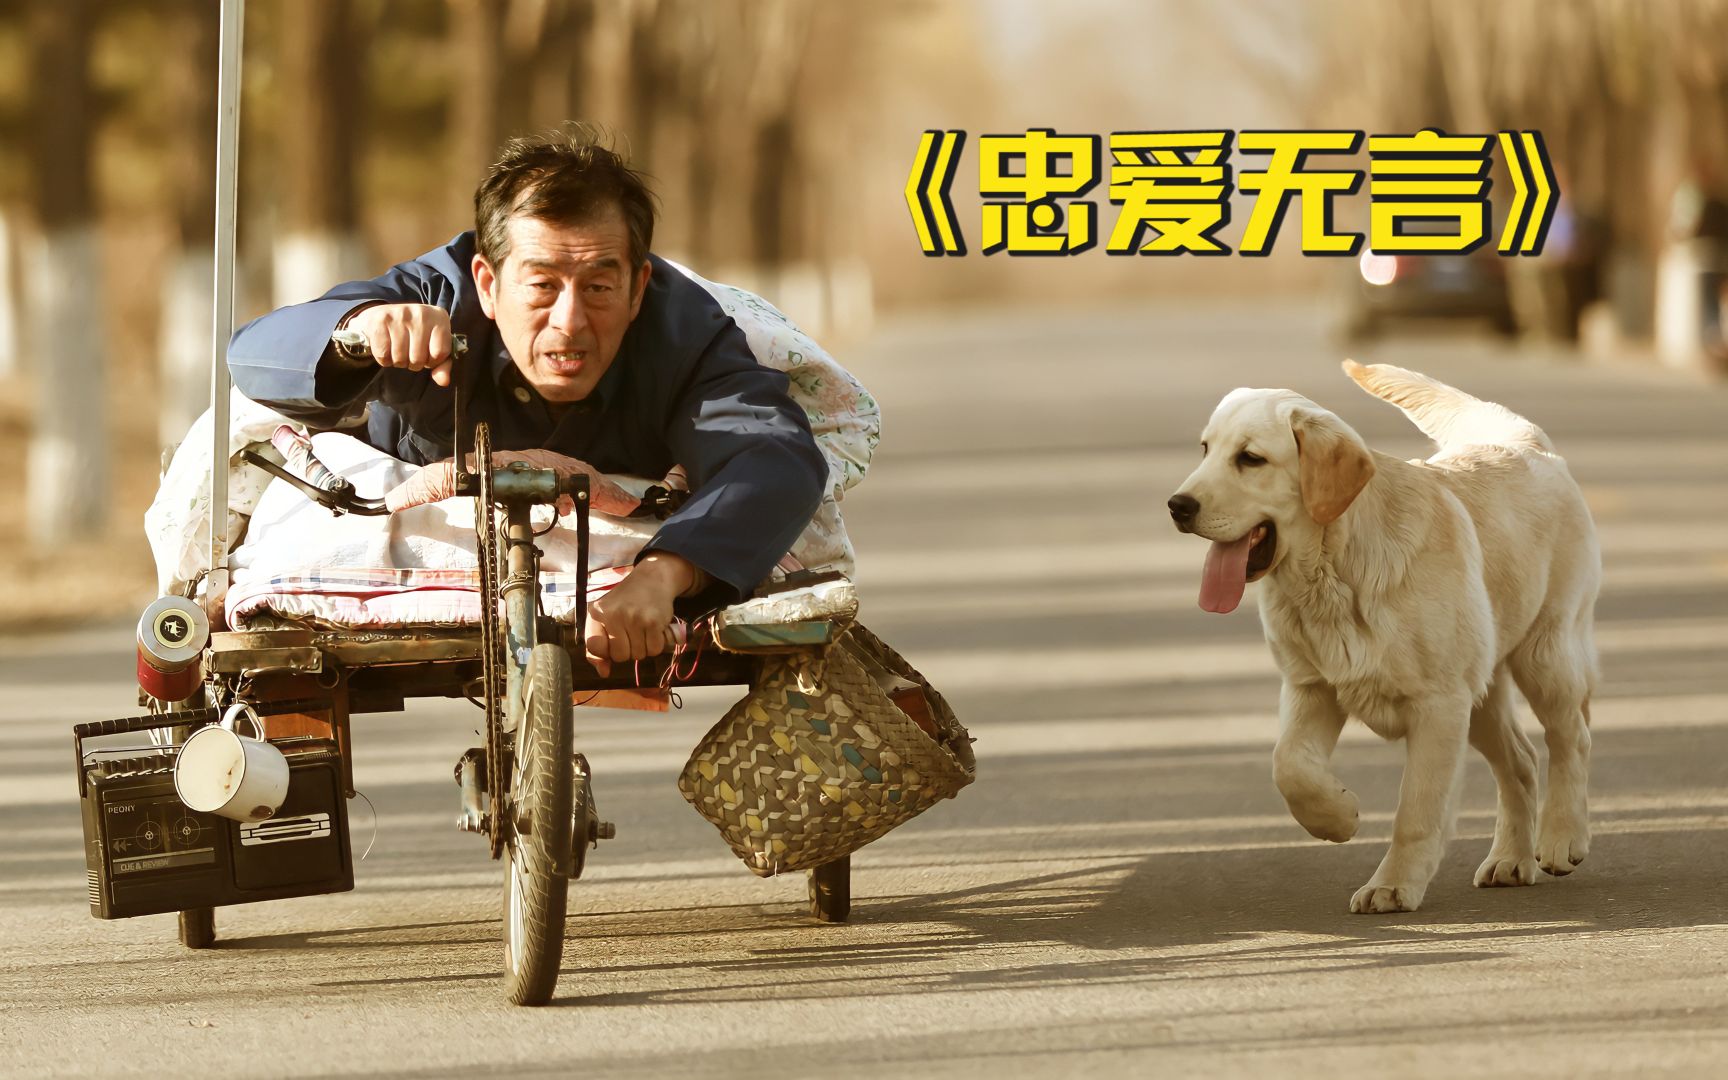 残疾老人和狗相依为命，却为了四千卖掉狗子，国产催泪电影